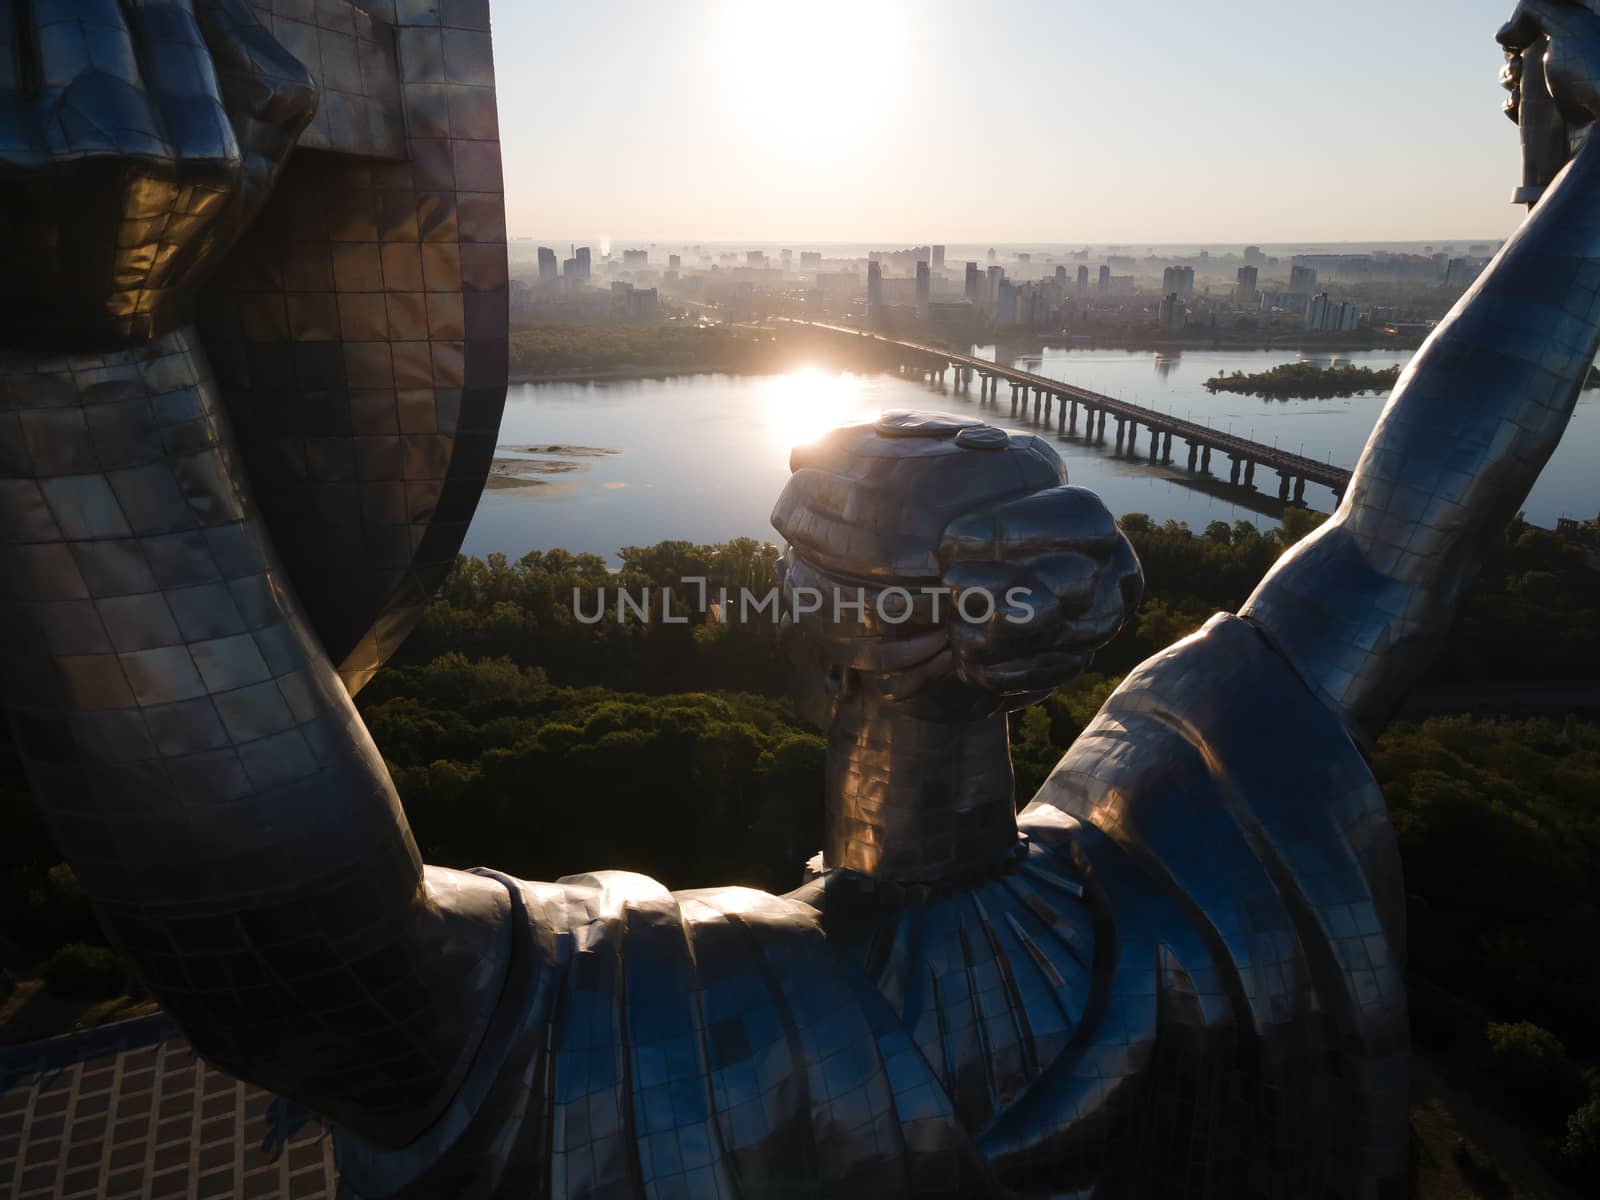 Monument Motherland in the morning. Kyiv, Ukraine. Aerial view by Mykola_Kondrashev